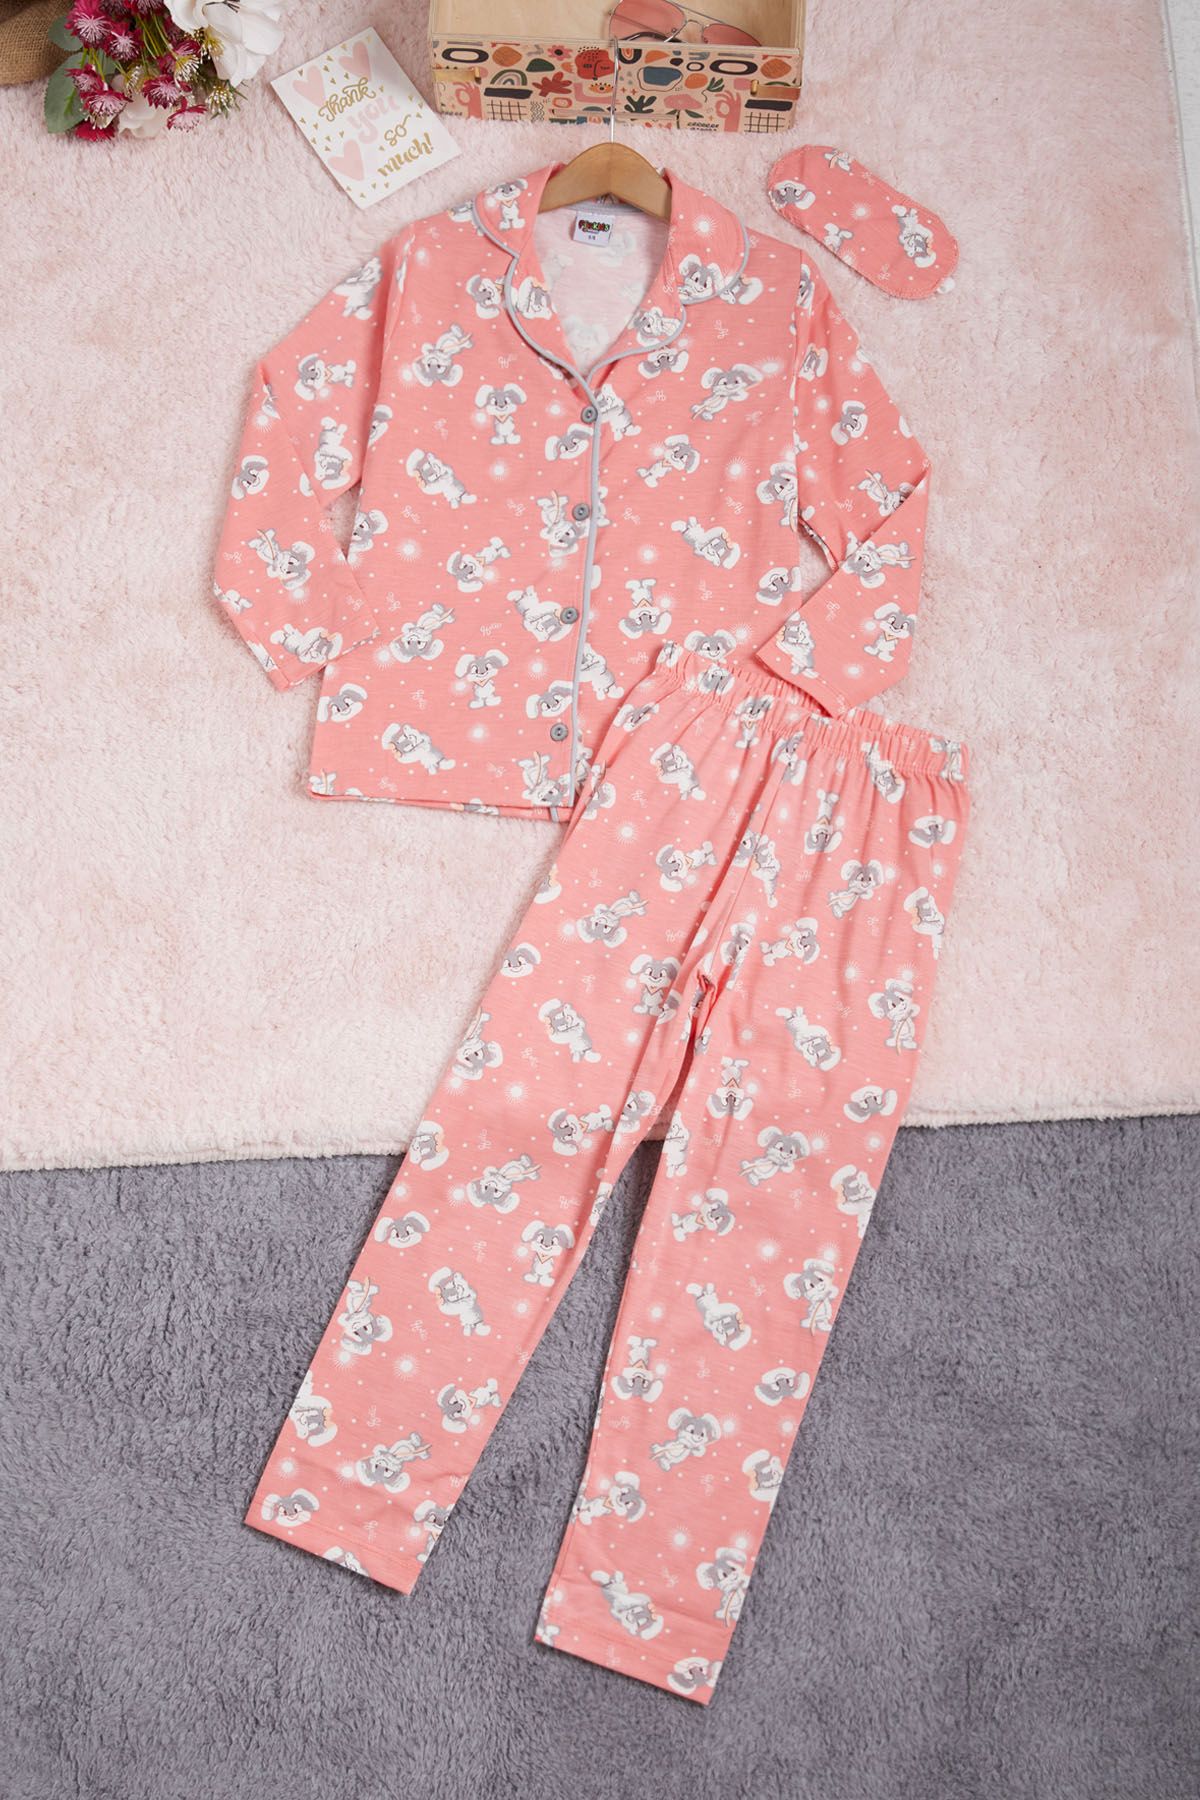 Cansın Mini Sevimli Tavşan Desenli Kız Çocuk Pijama Takımı 16330